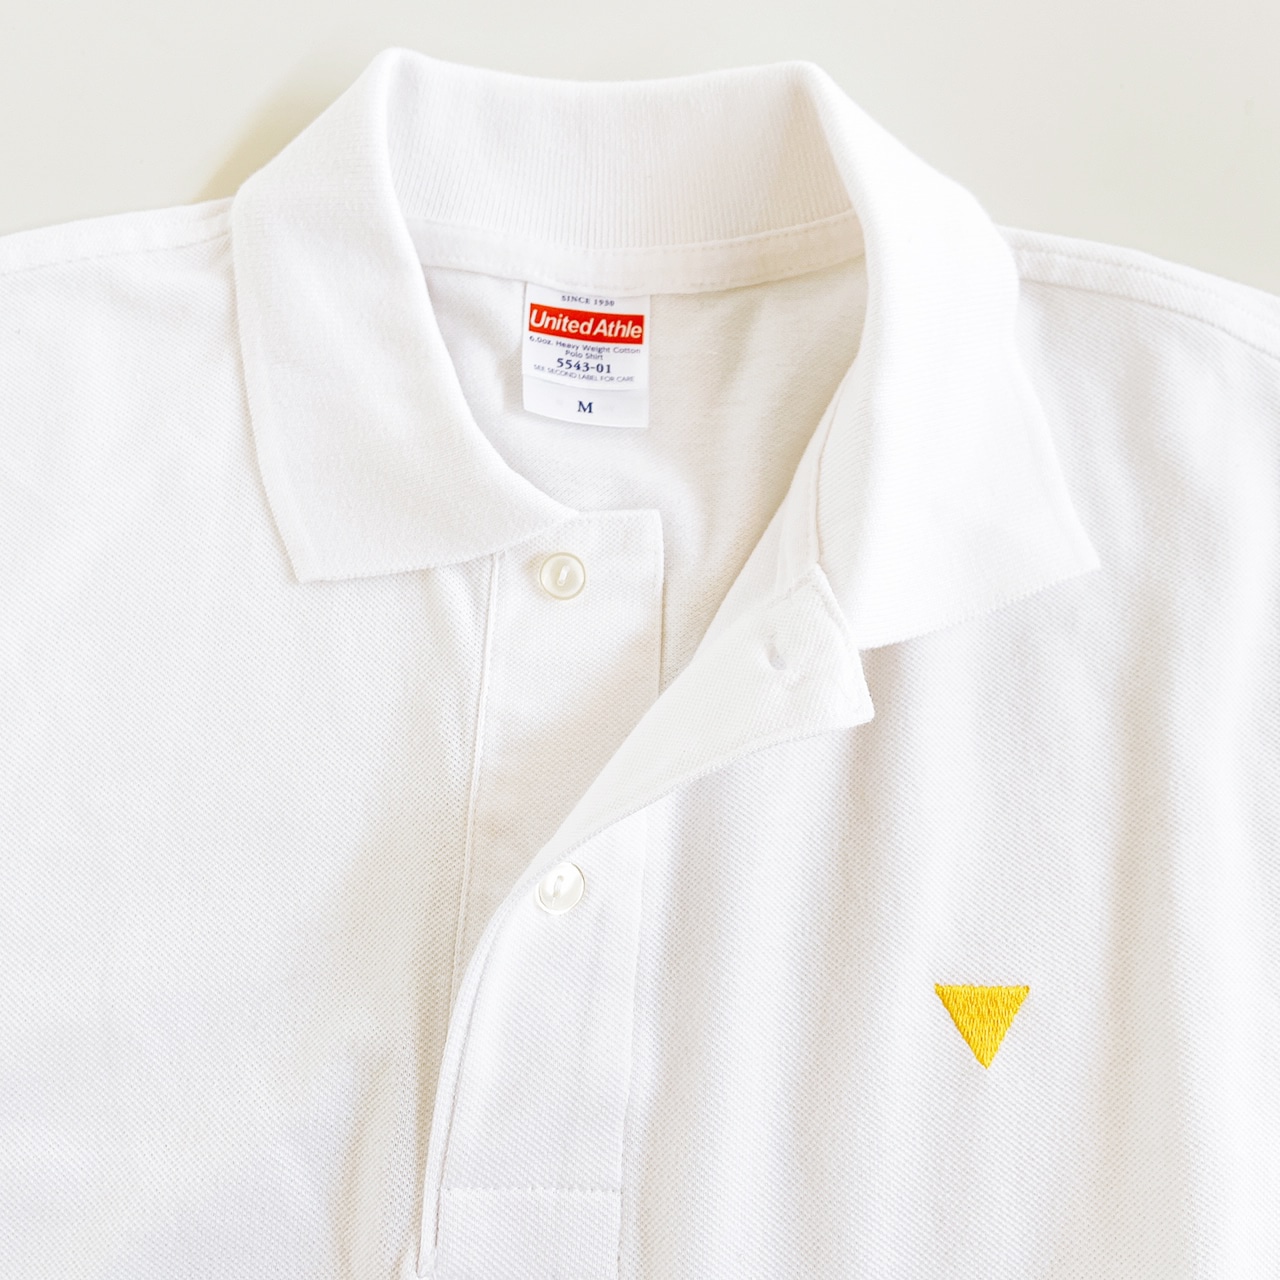 ▽ロゴ　ポロシャツ〈ホワイト〉/ Polo Shirt <white>